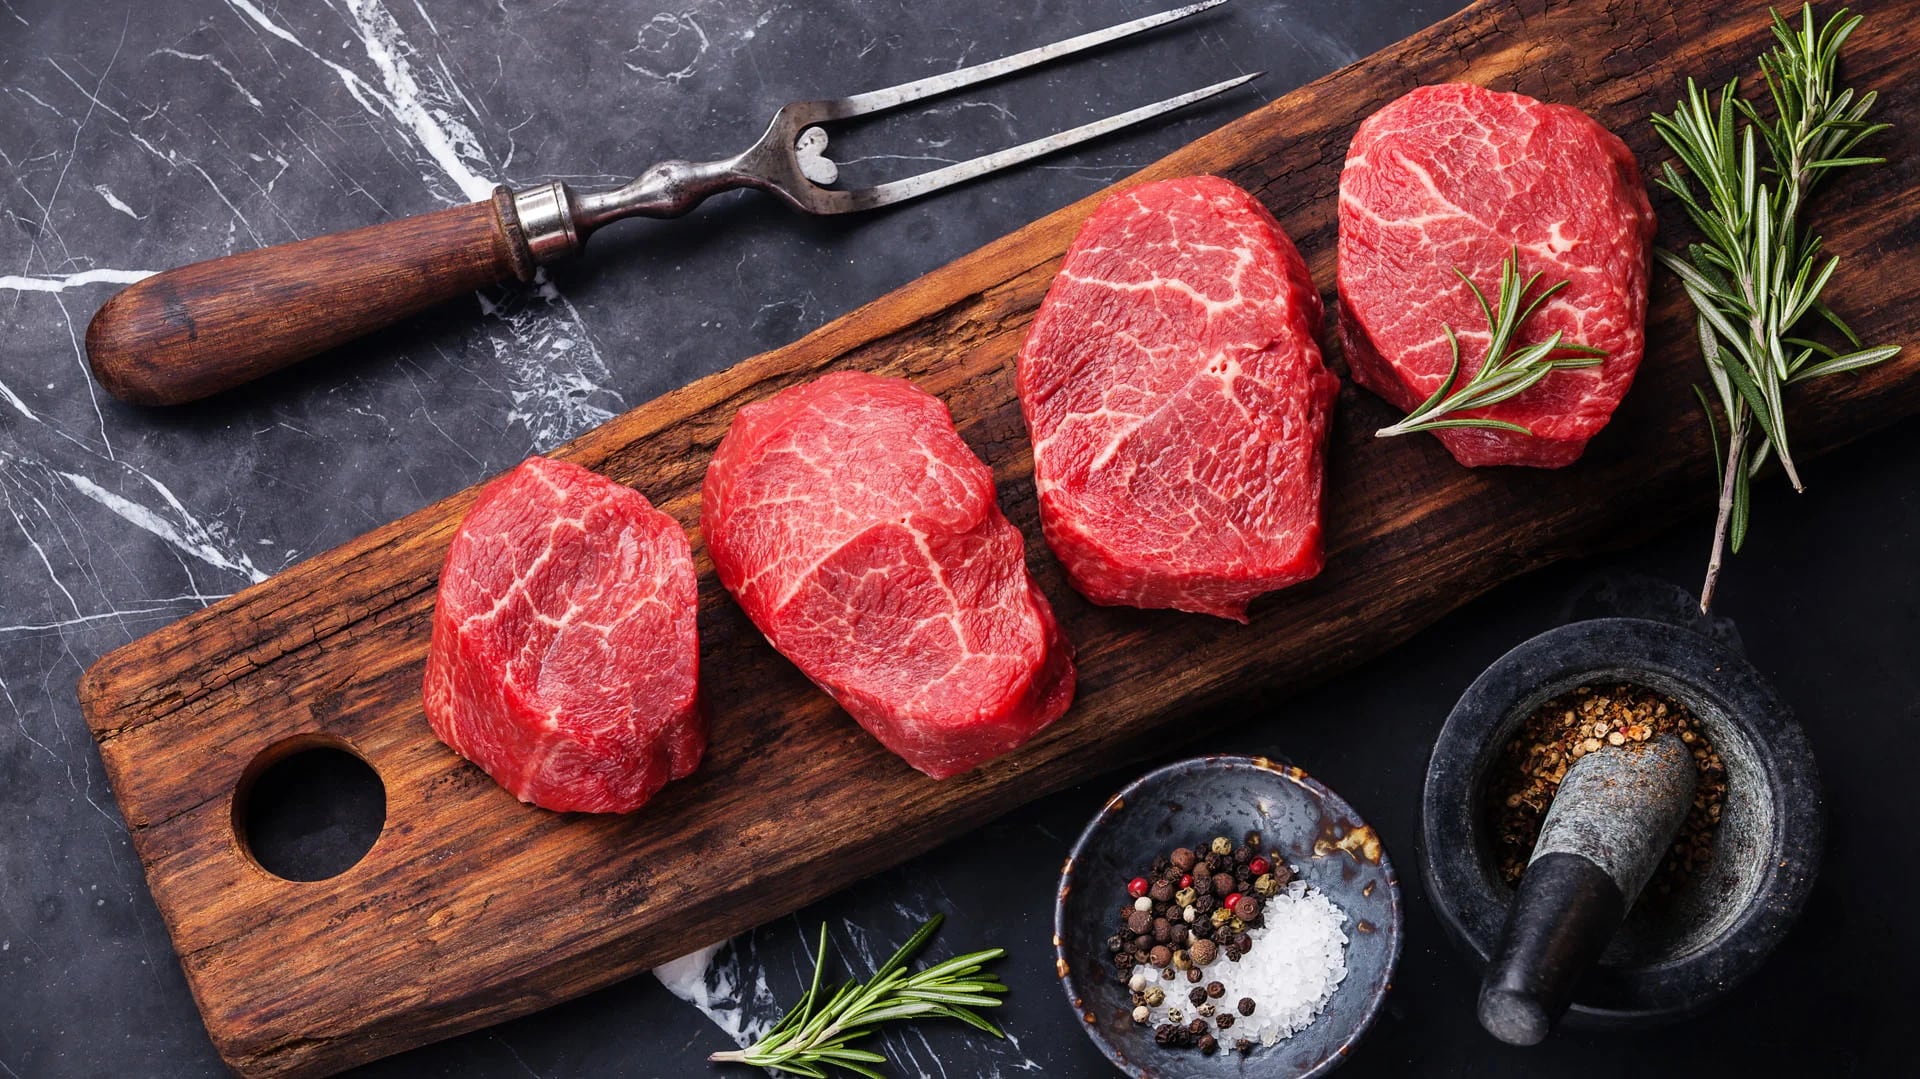 La carne roja puede ser muy dañina para una persona con enfermedades cardíacas (Shutterstock)